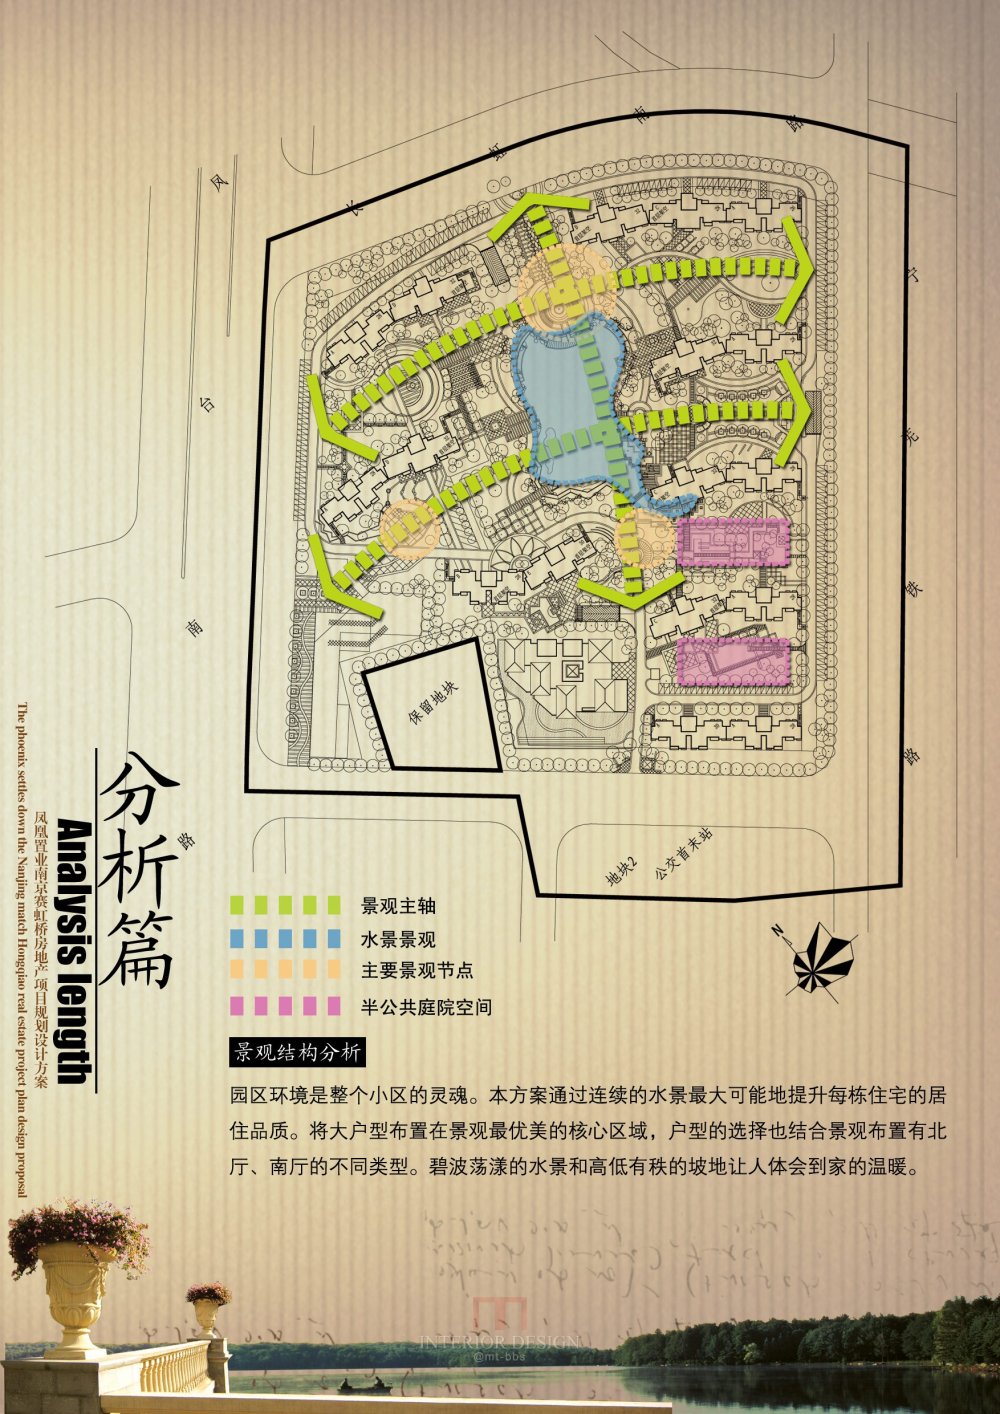 凤凰置业南京赛虹桥房地产项目规划设计方案_02-11分析篇-景观结构分析.jpg